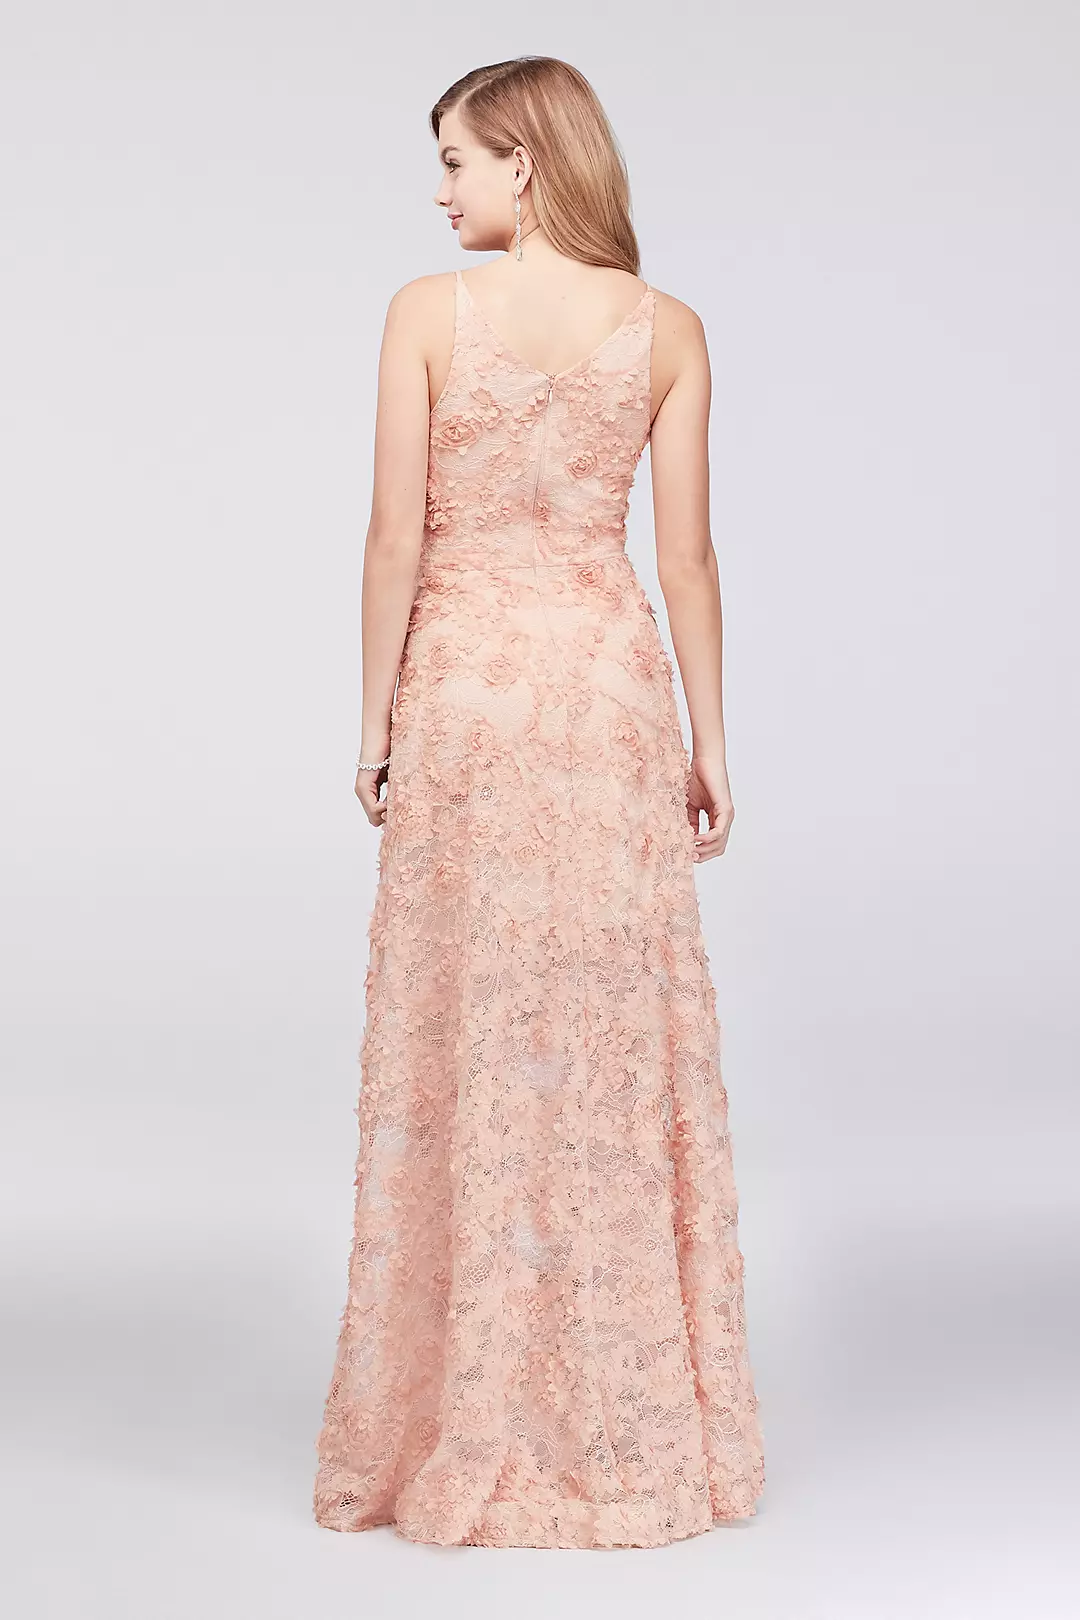 3D Floral Applique Lace A-Line Gown Image 2